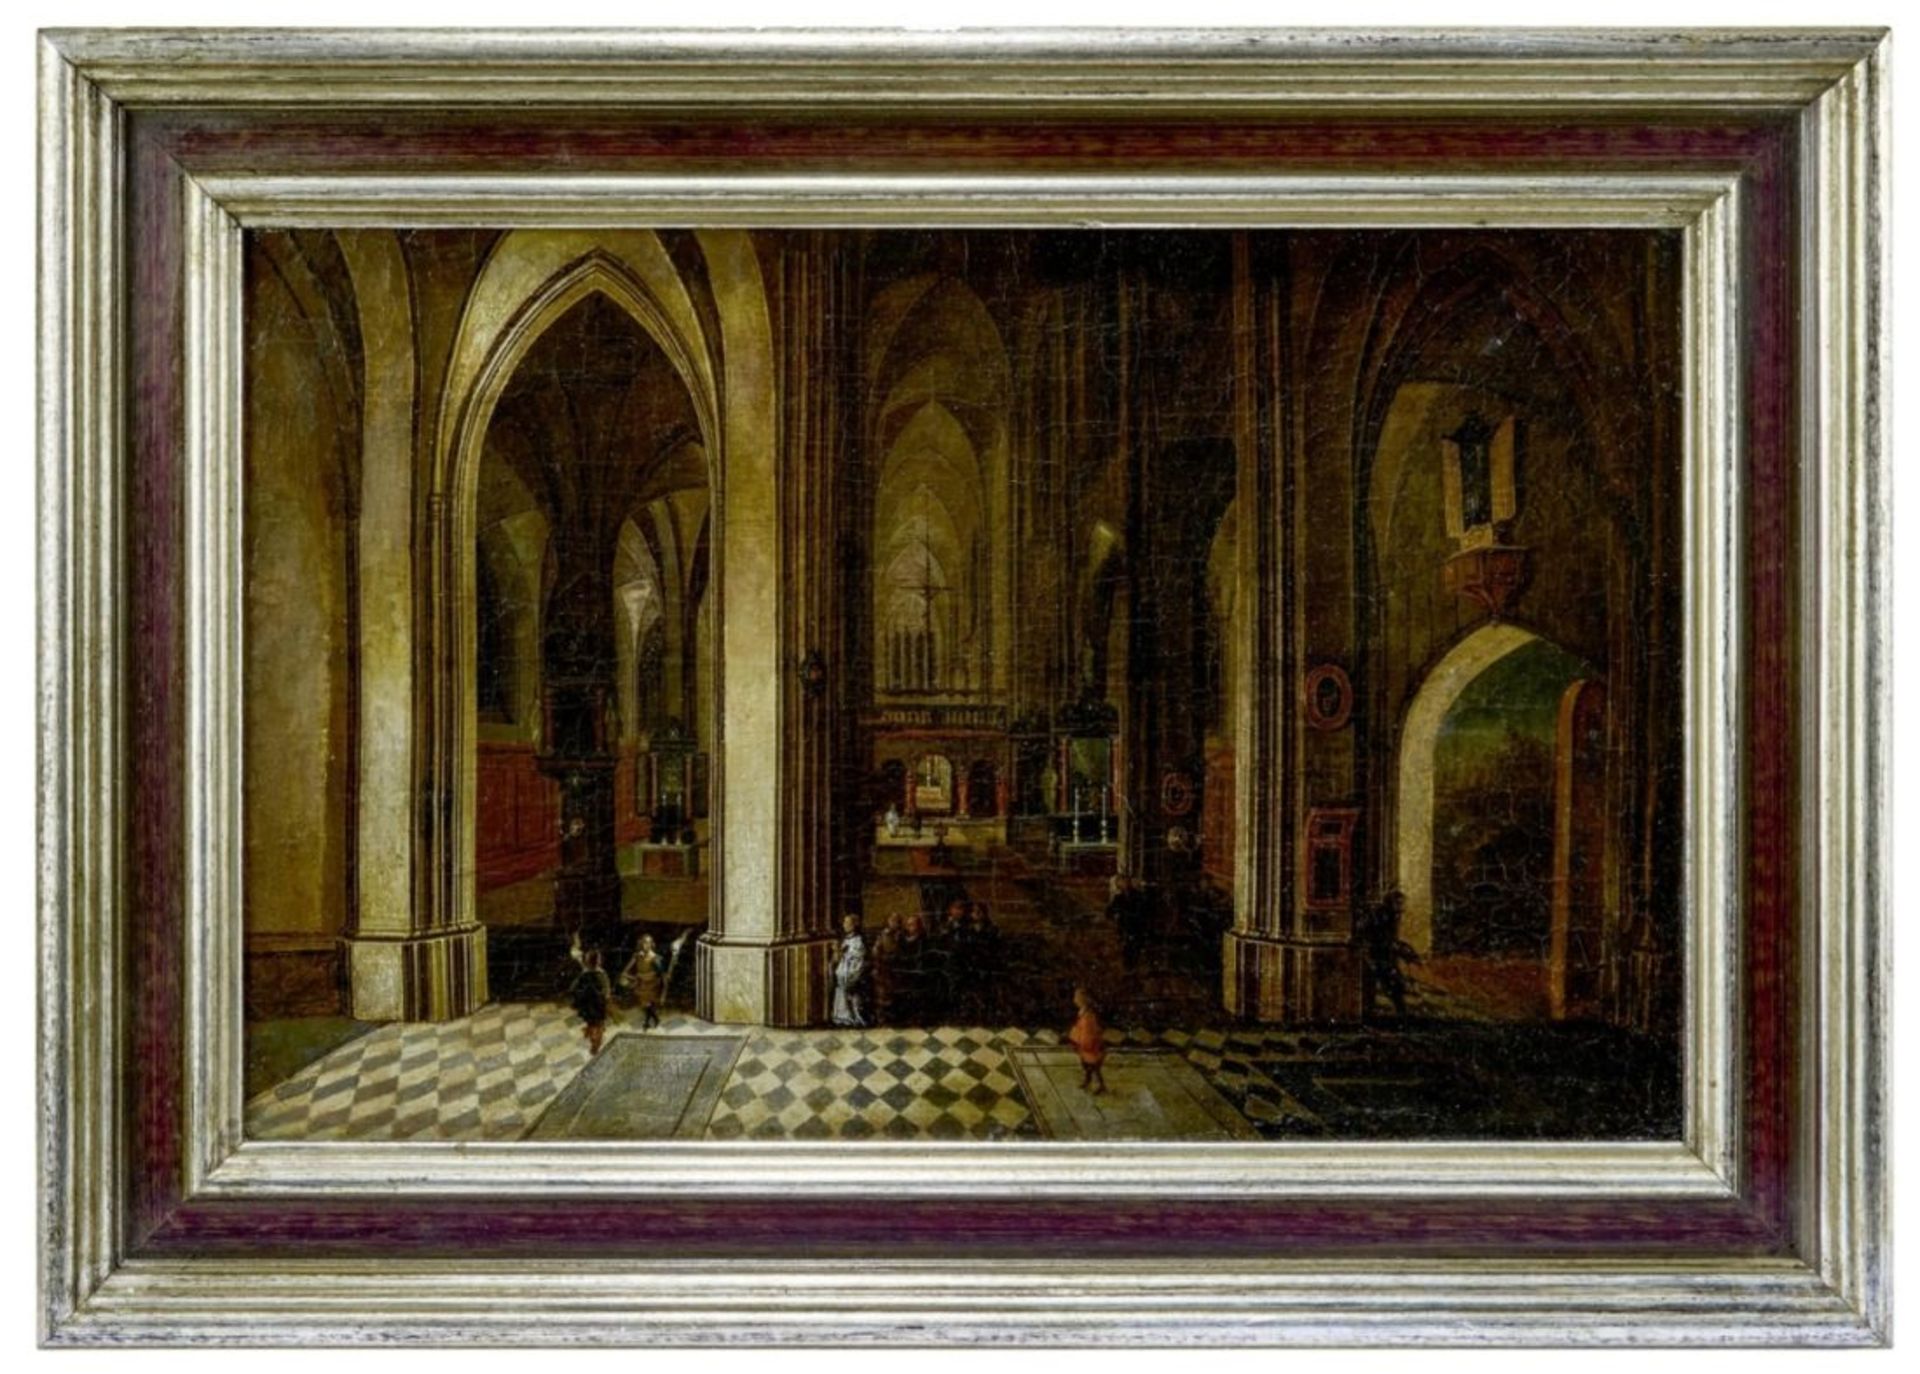 Neeffs, Pieter d.Ä. und Adriaen van Stalbemt, Betende in einer gotischen Kirche